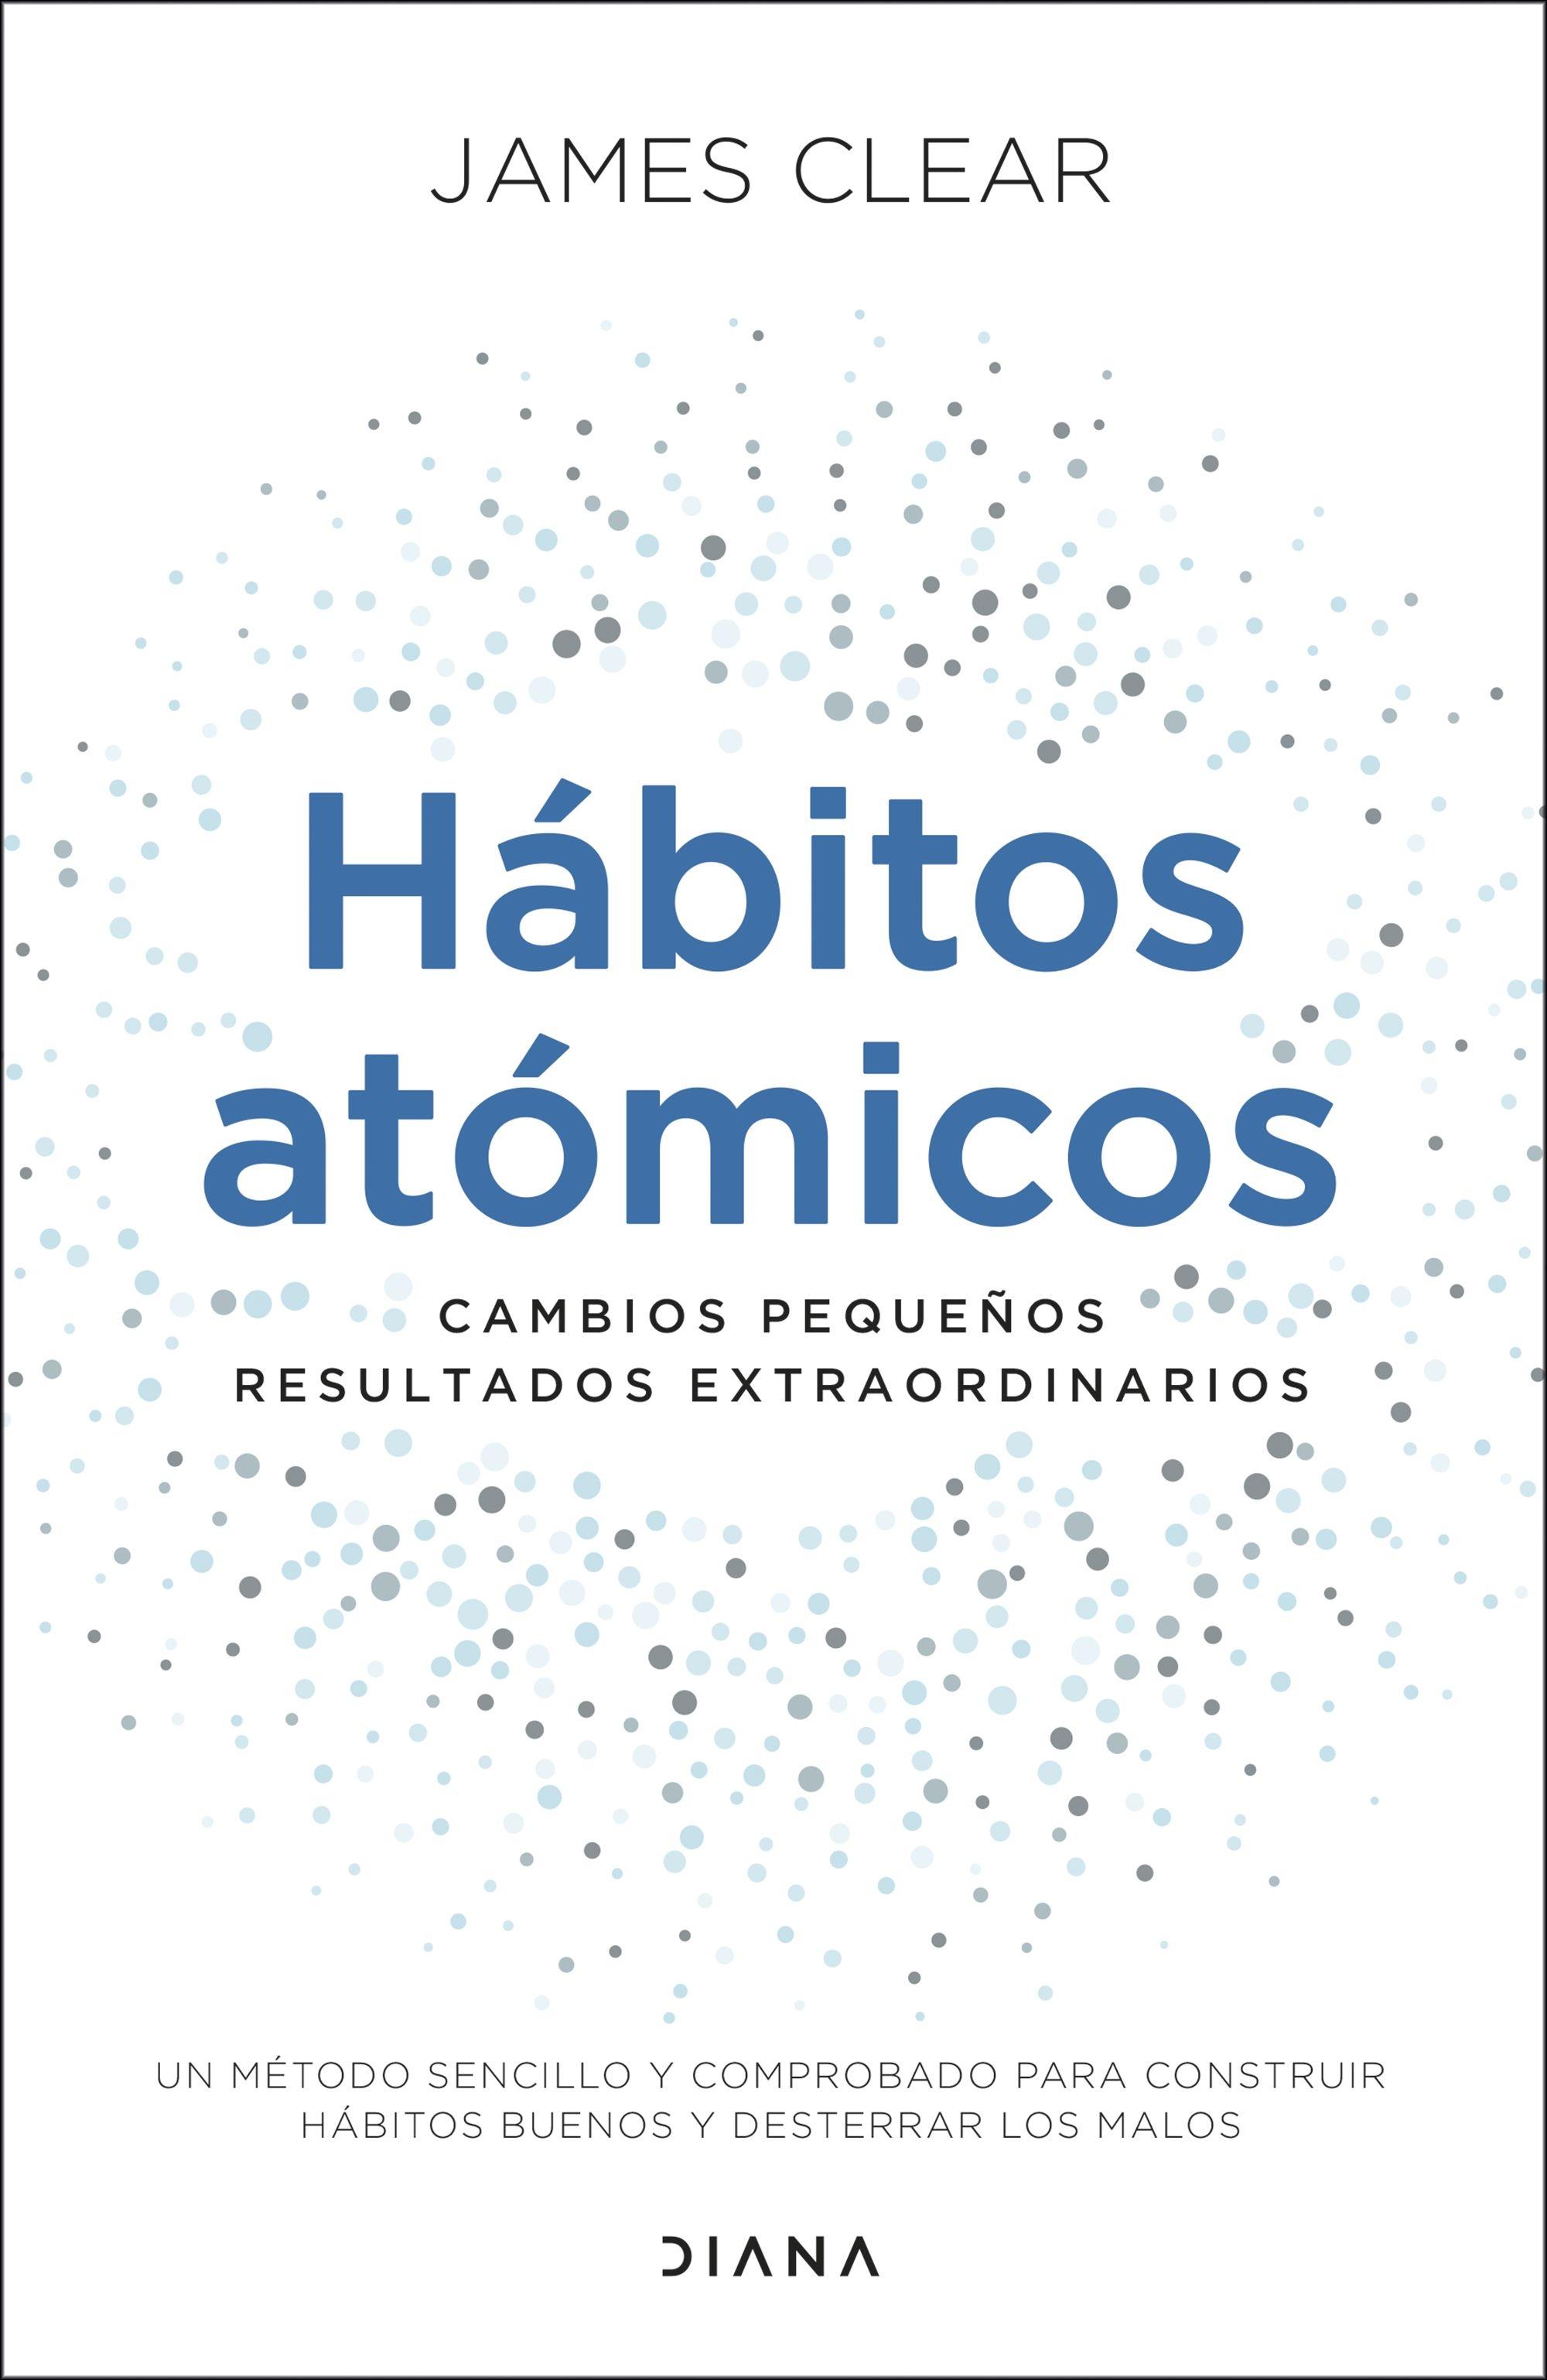 HABITOS ATOMICOS "CAMBIOS PEQUEÑOS, RESULTADOS EXTRAORDINARIOS". 